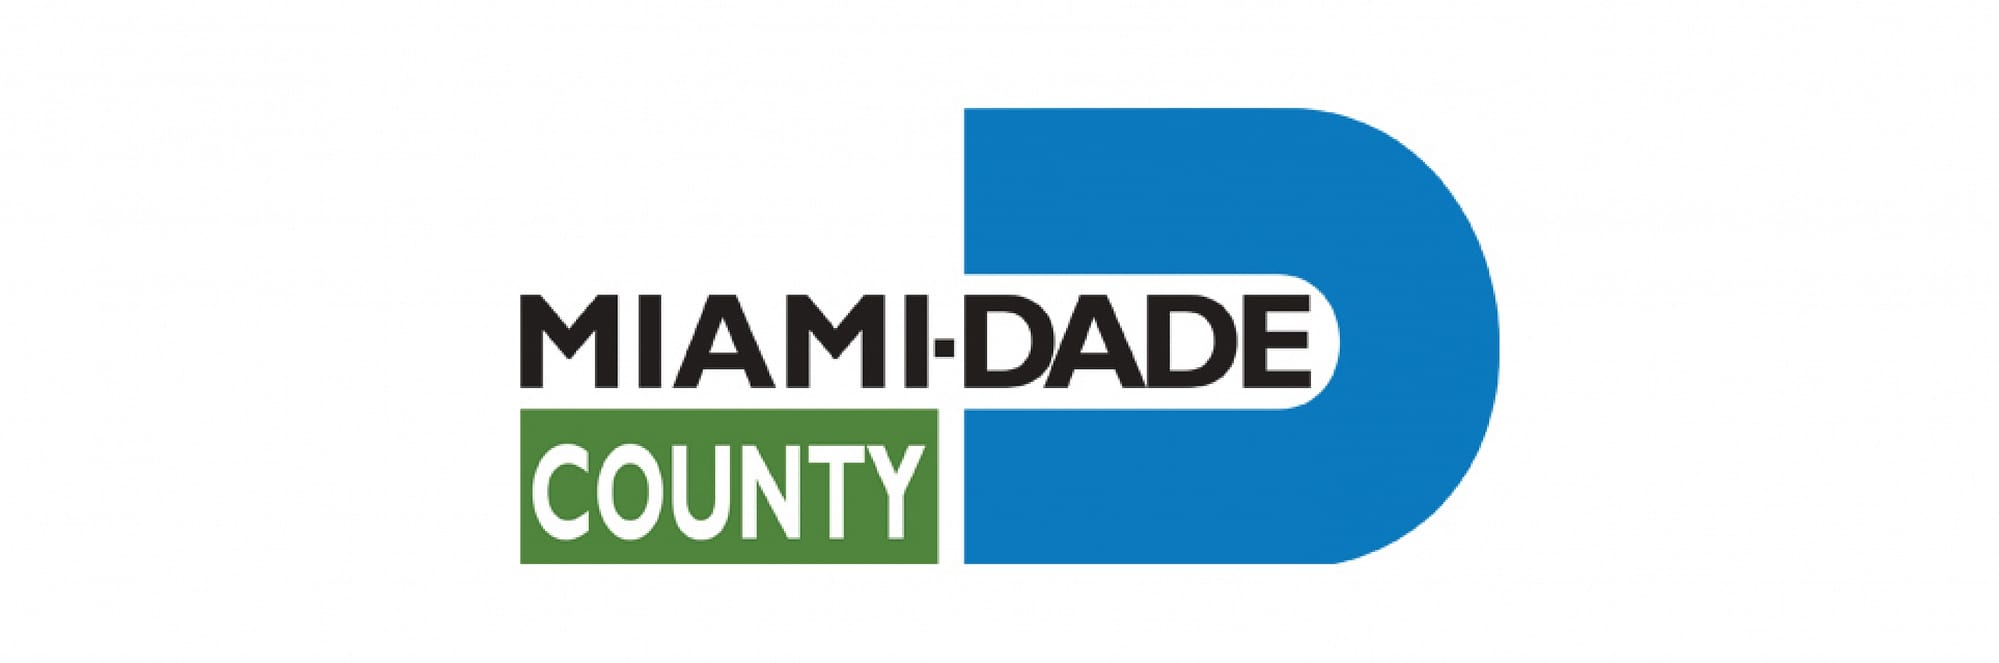 Miami Dade certification logo